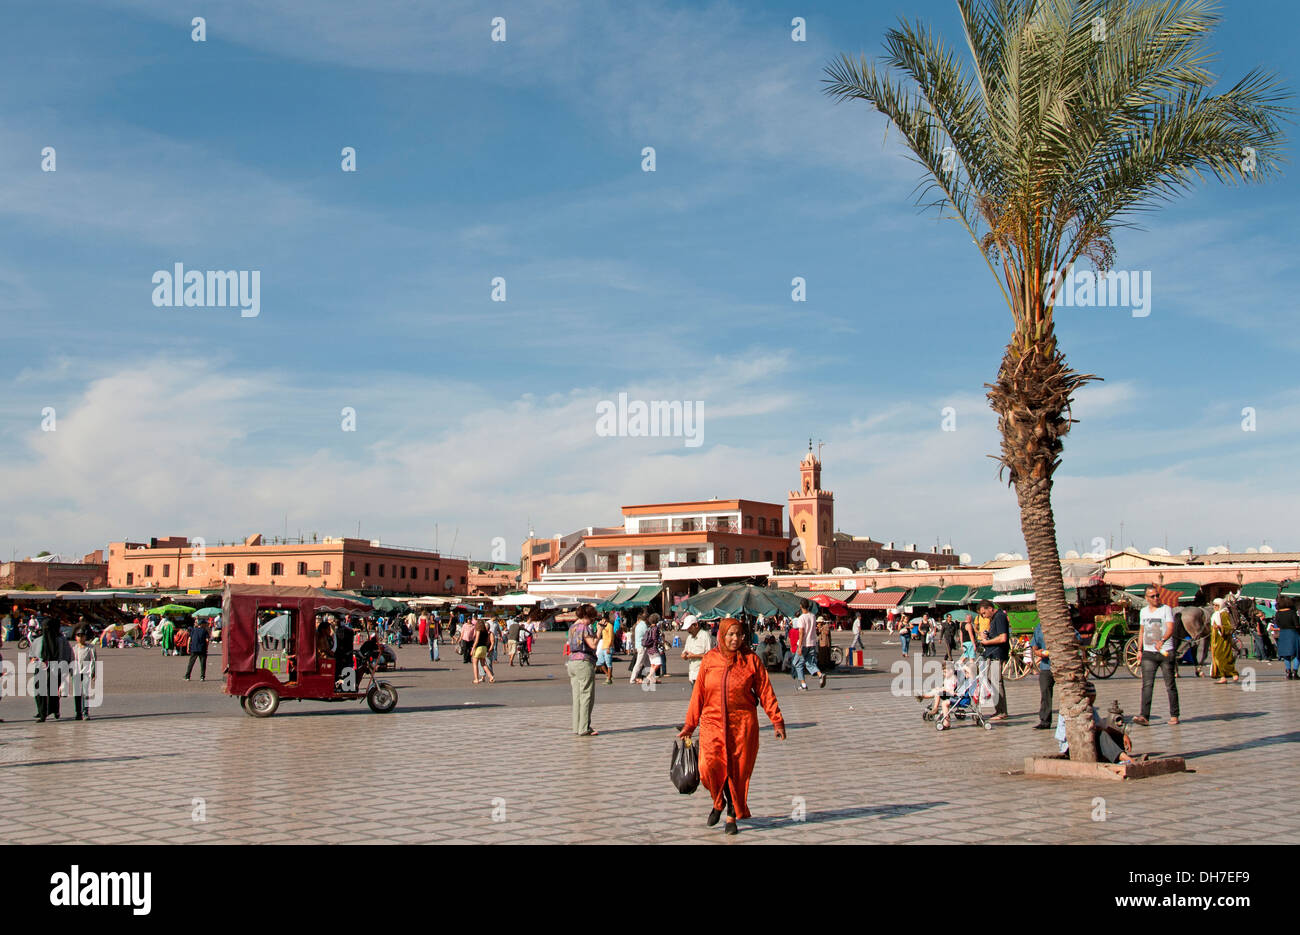 Jamaa el Fna est un carré et de la place du marché de la médina de Marrakech (vieille ville) Maroc Banque D'Images